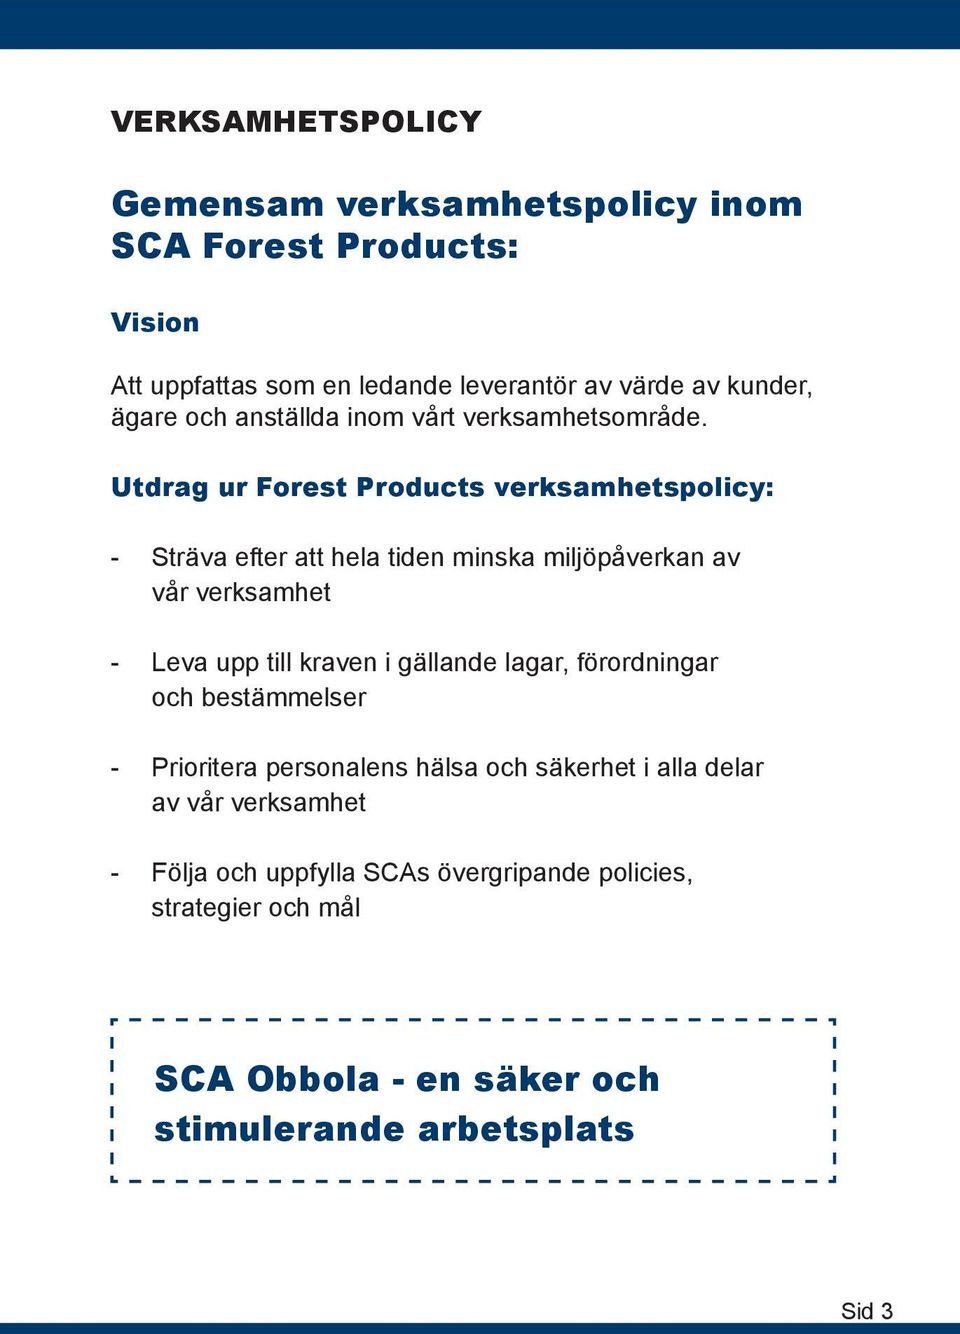 Utdrag ur Forest Products verksamhetspolicy: - Sträva efter att hela tiden minska miljöpåverkan av vår verksamhet - Leva upp till kraven i